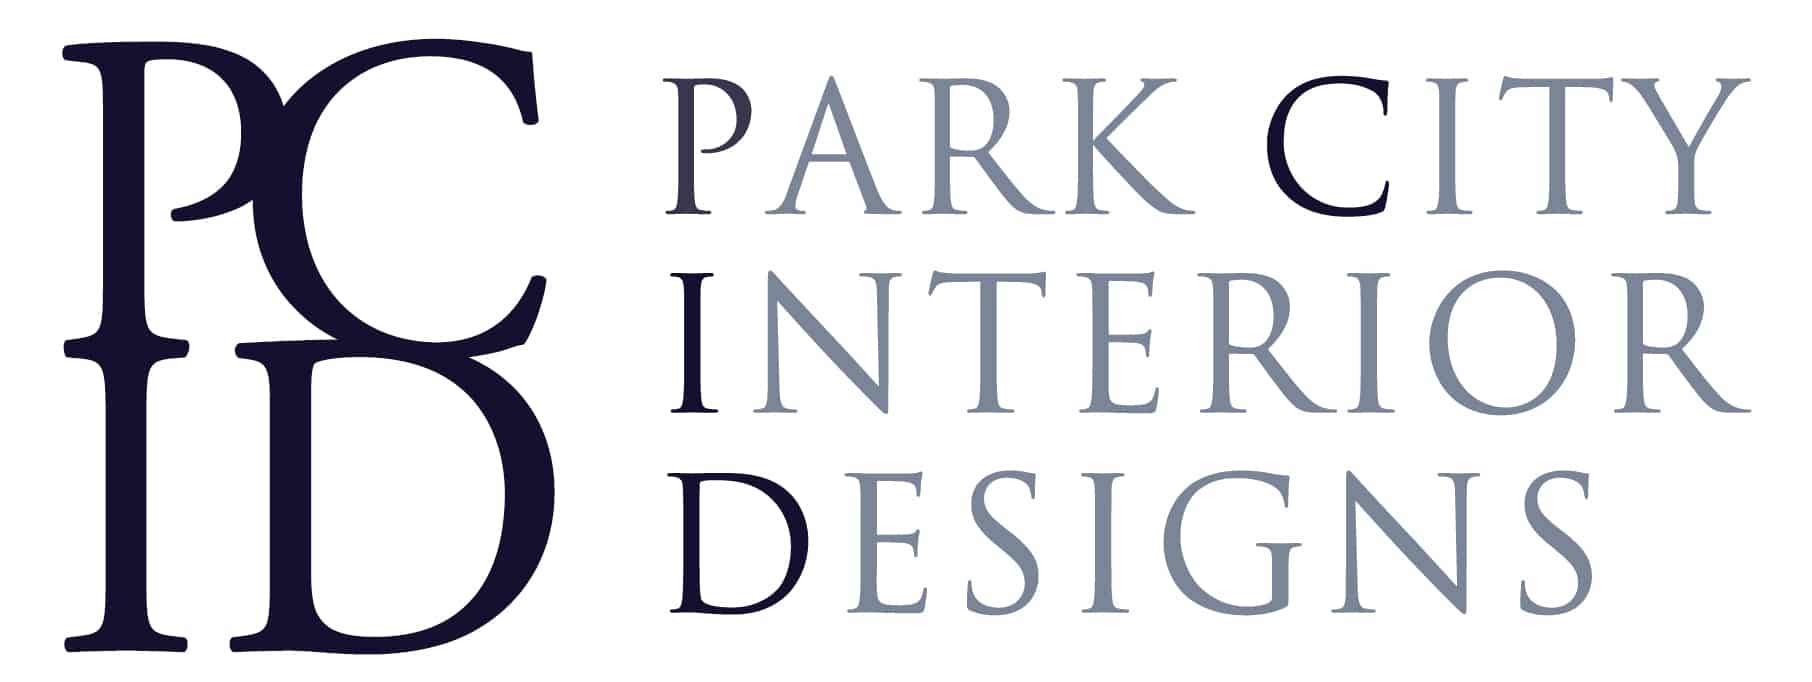 Park City Interior Design